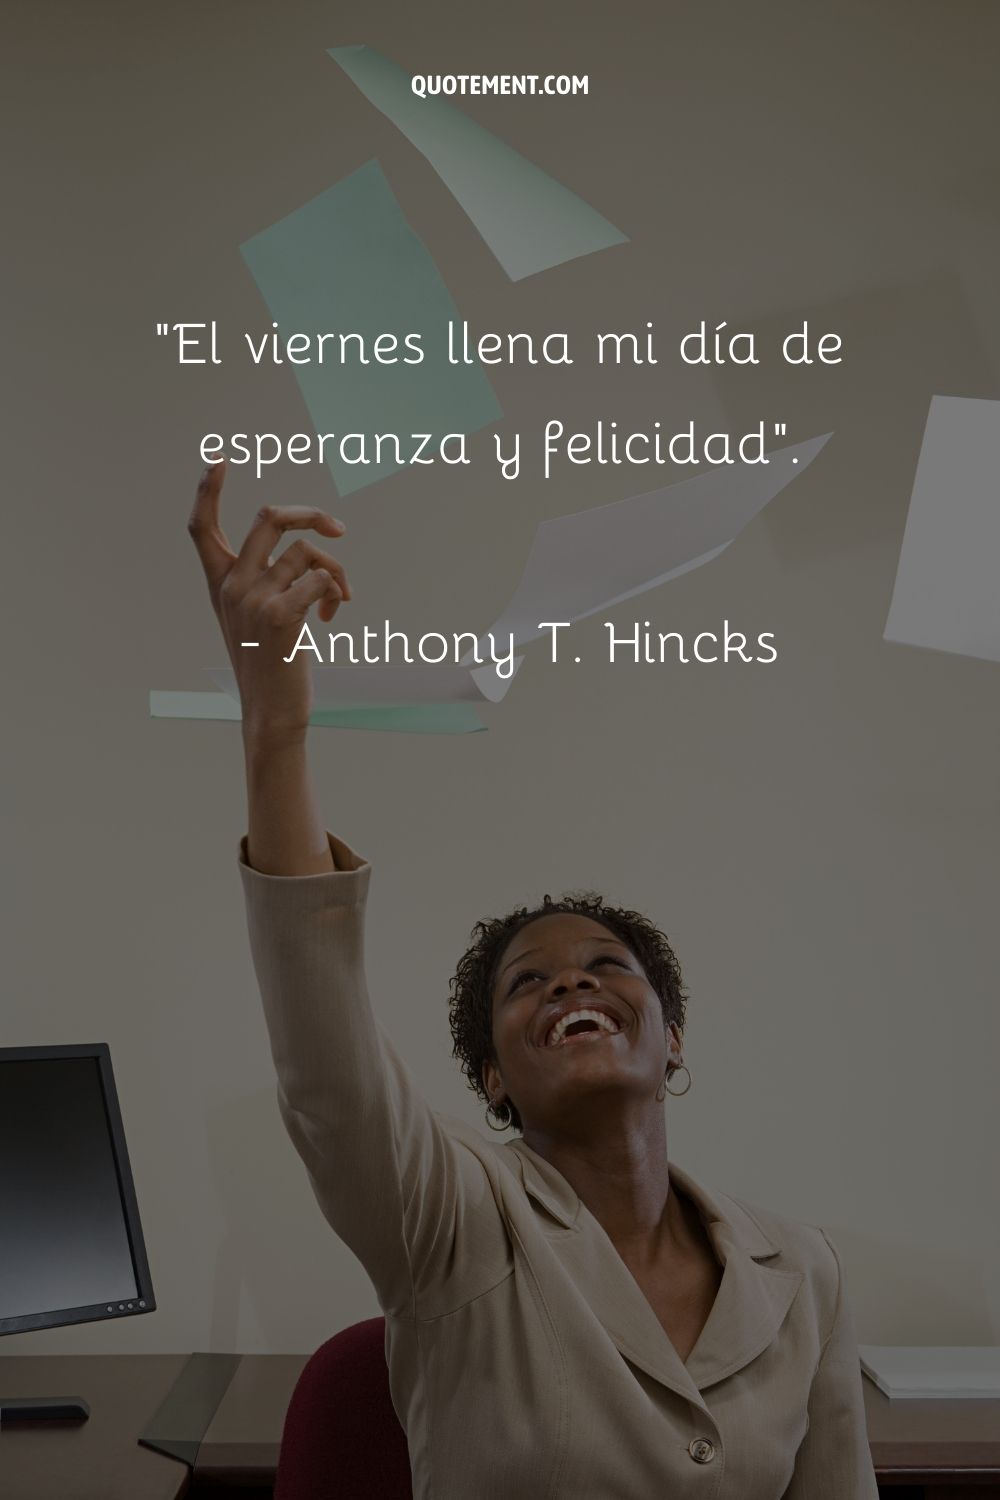 "El viernes llena mi día de esperanza y felicidad". - Anthony T. Hincks